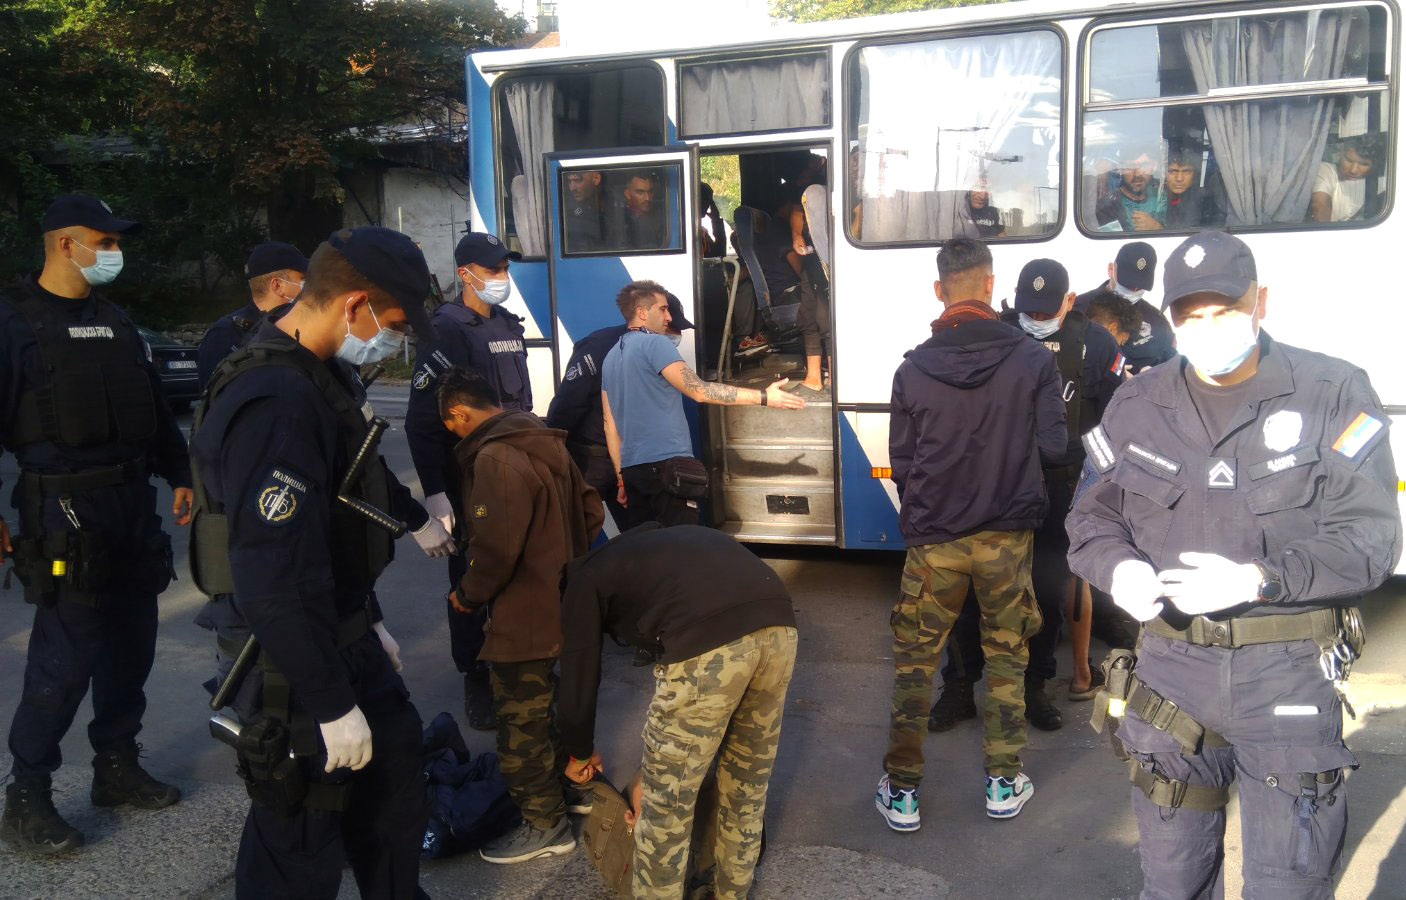 Током редовне акције пронађено 84 илегалнa мигранта који су спроведени у прихватни центар